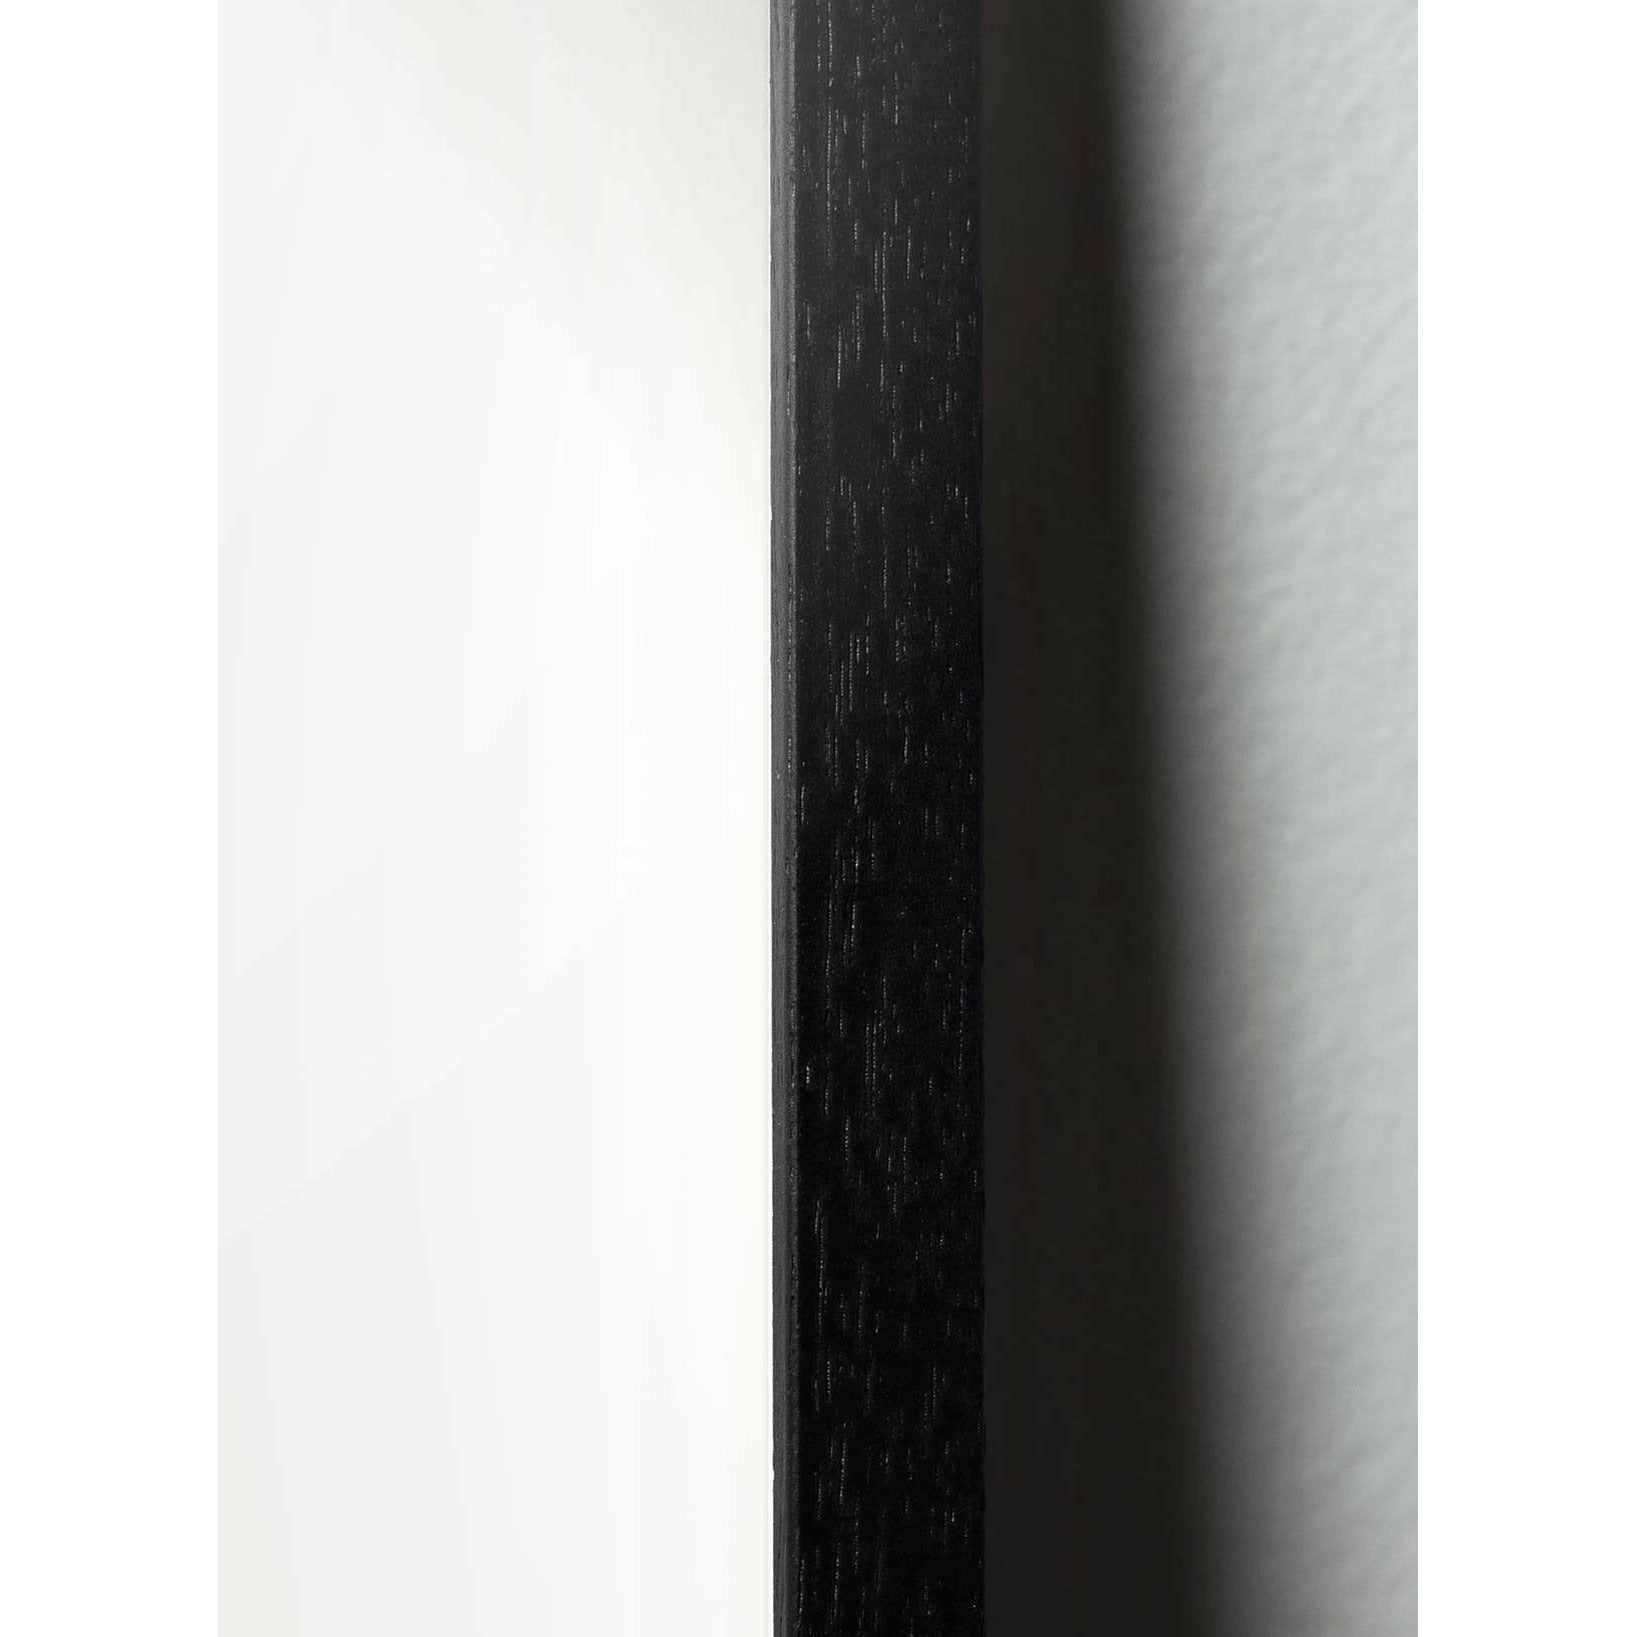 Póster de línea de hormigas de creación, marco en madera lacada negra de 30x40 cm, fondo blanco